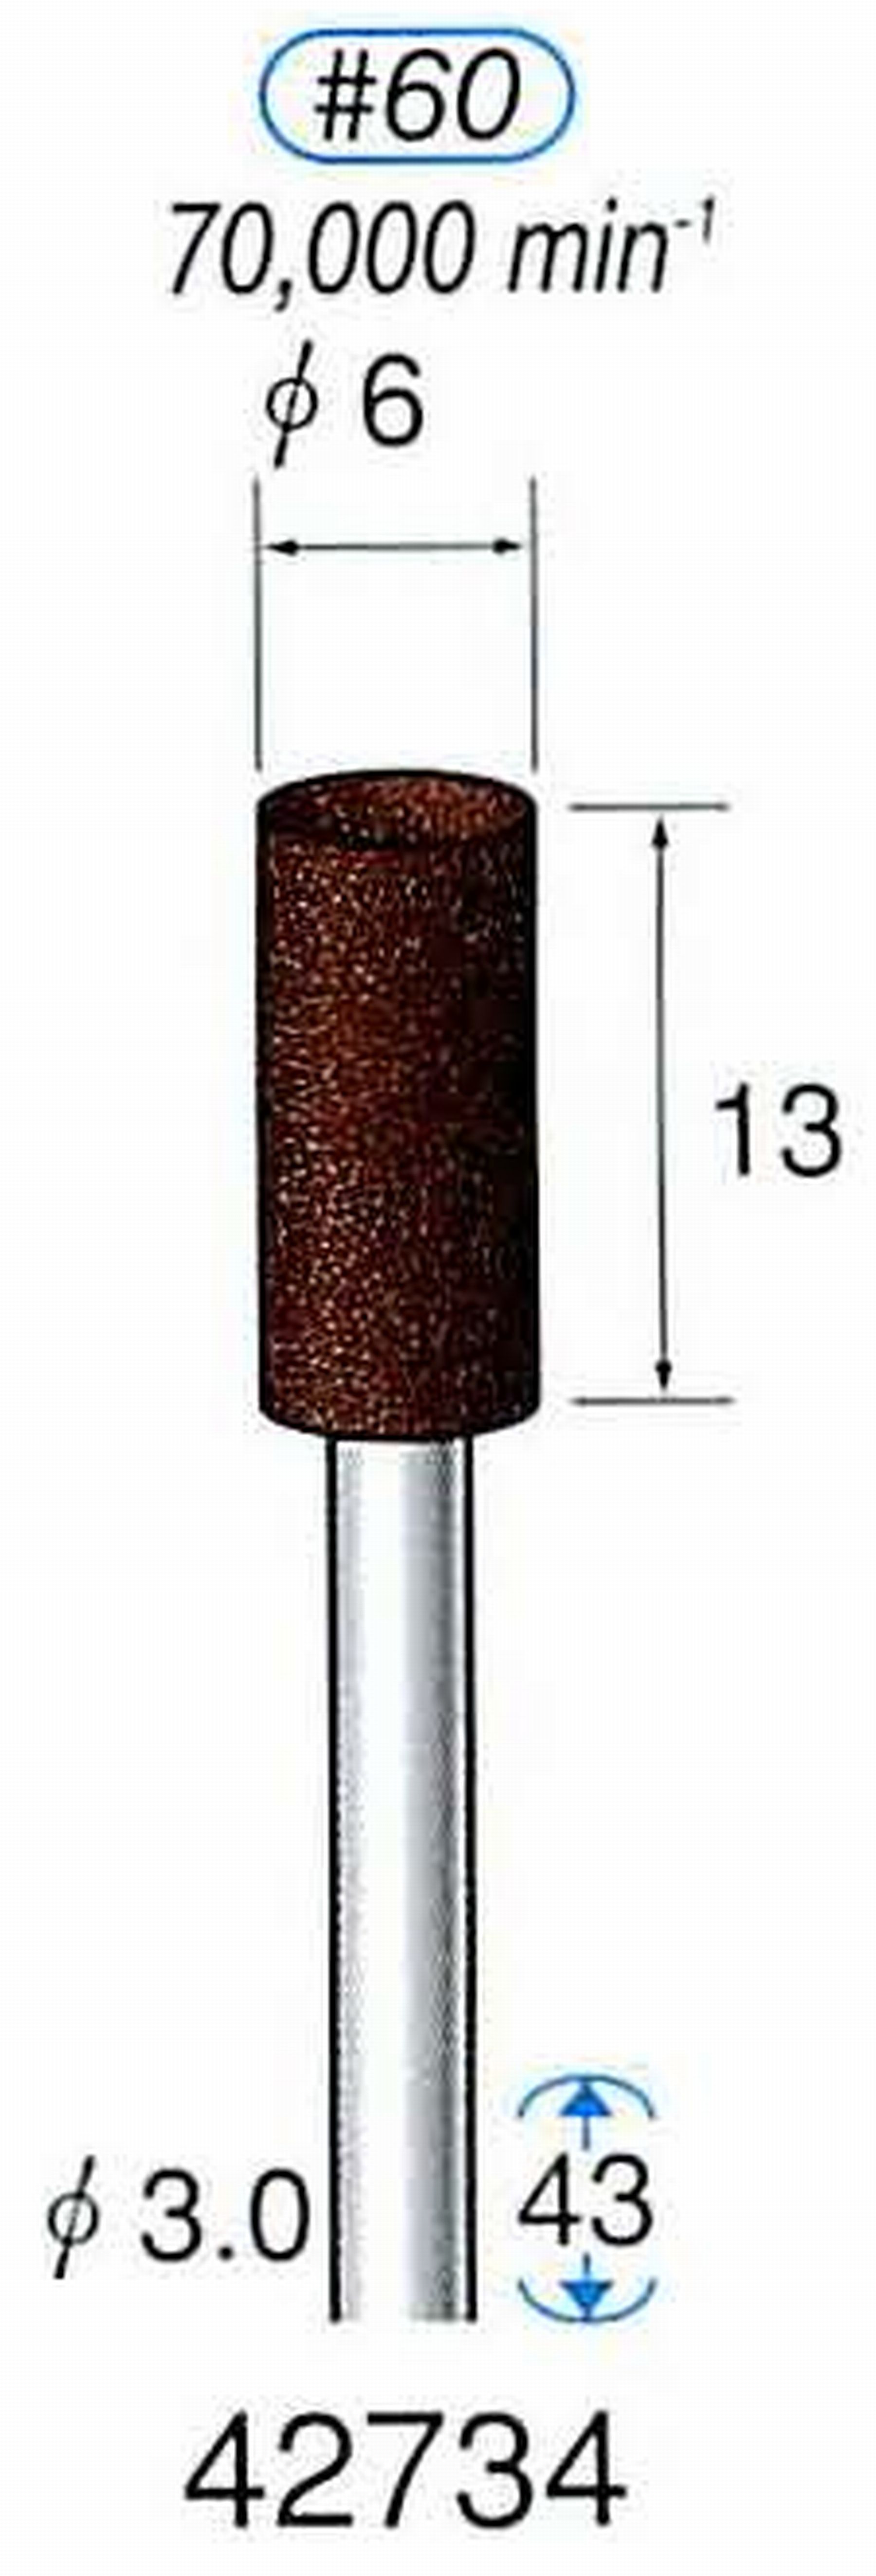 ナカニシ/NAKANISHI 軸付砥石(A・WA砥粒) ブラウン砥石 軸径(シャンク) φ3.0mm 42734